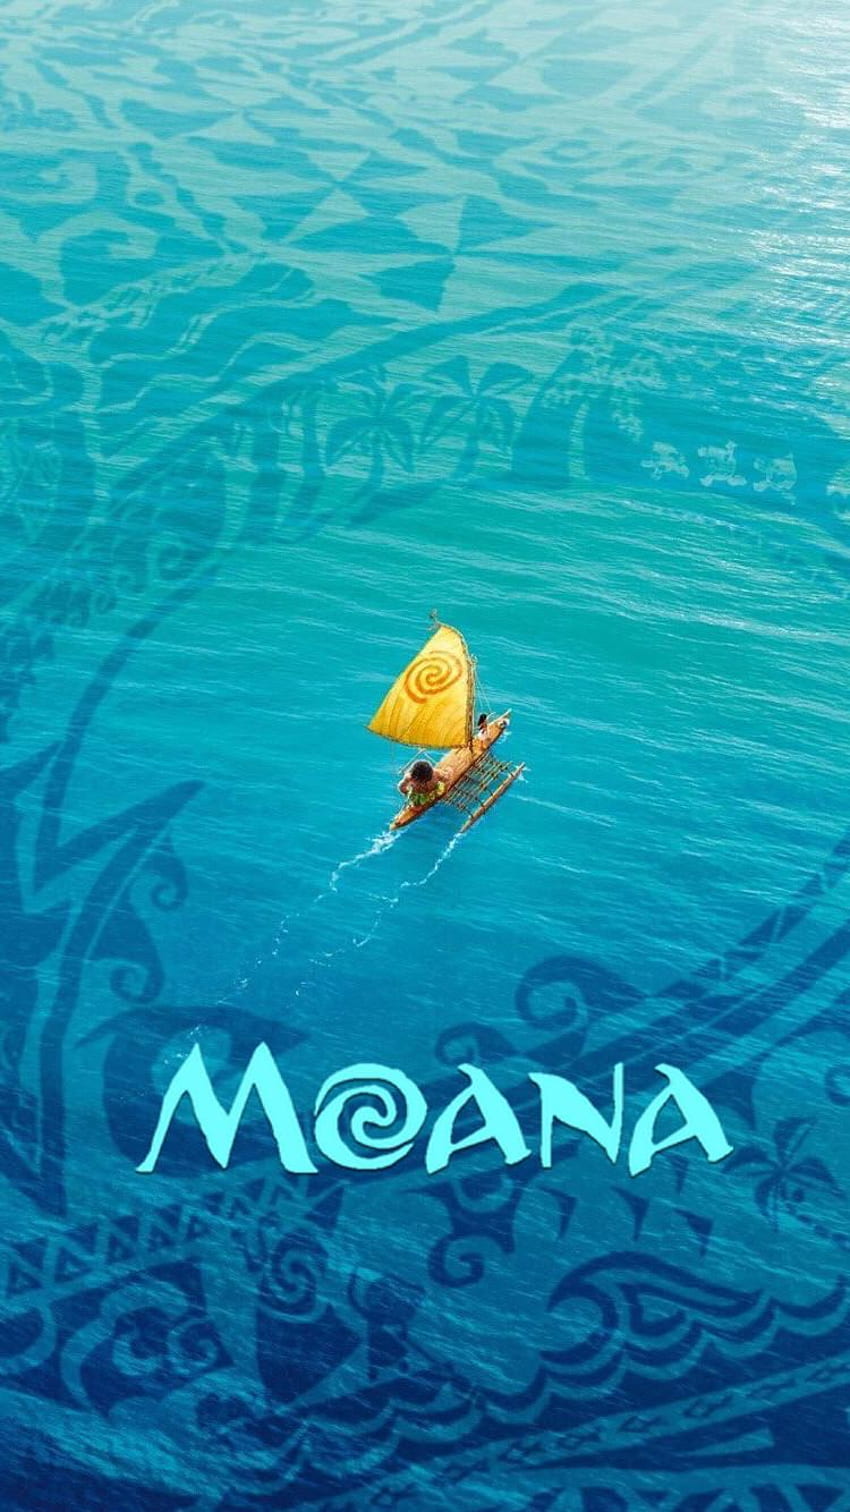 モアナと伝説の海/Moana[04]無料高画質iPhone壁紙. Cute disney HD phone wallpaper